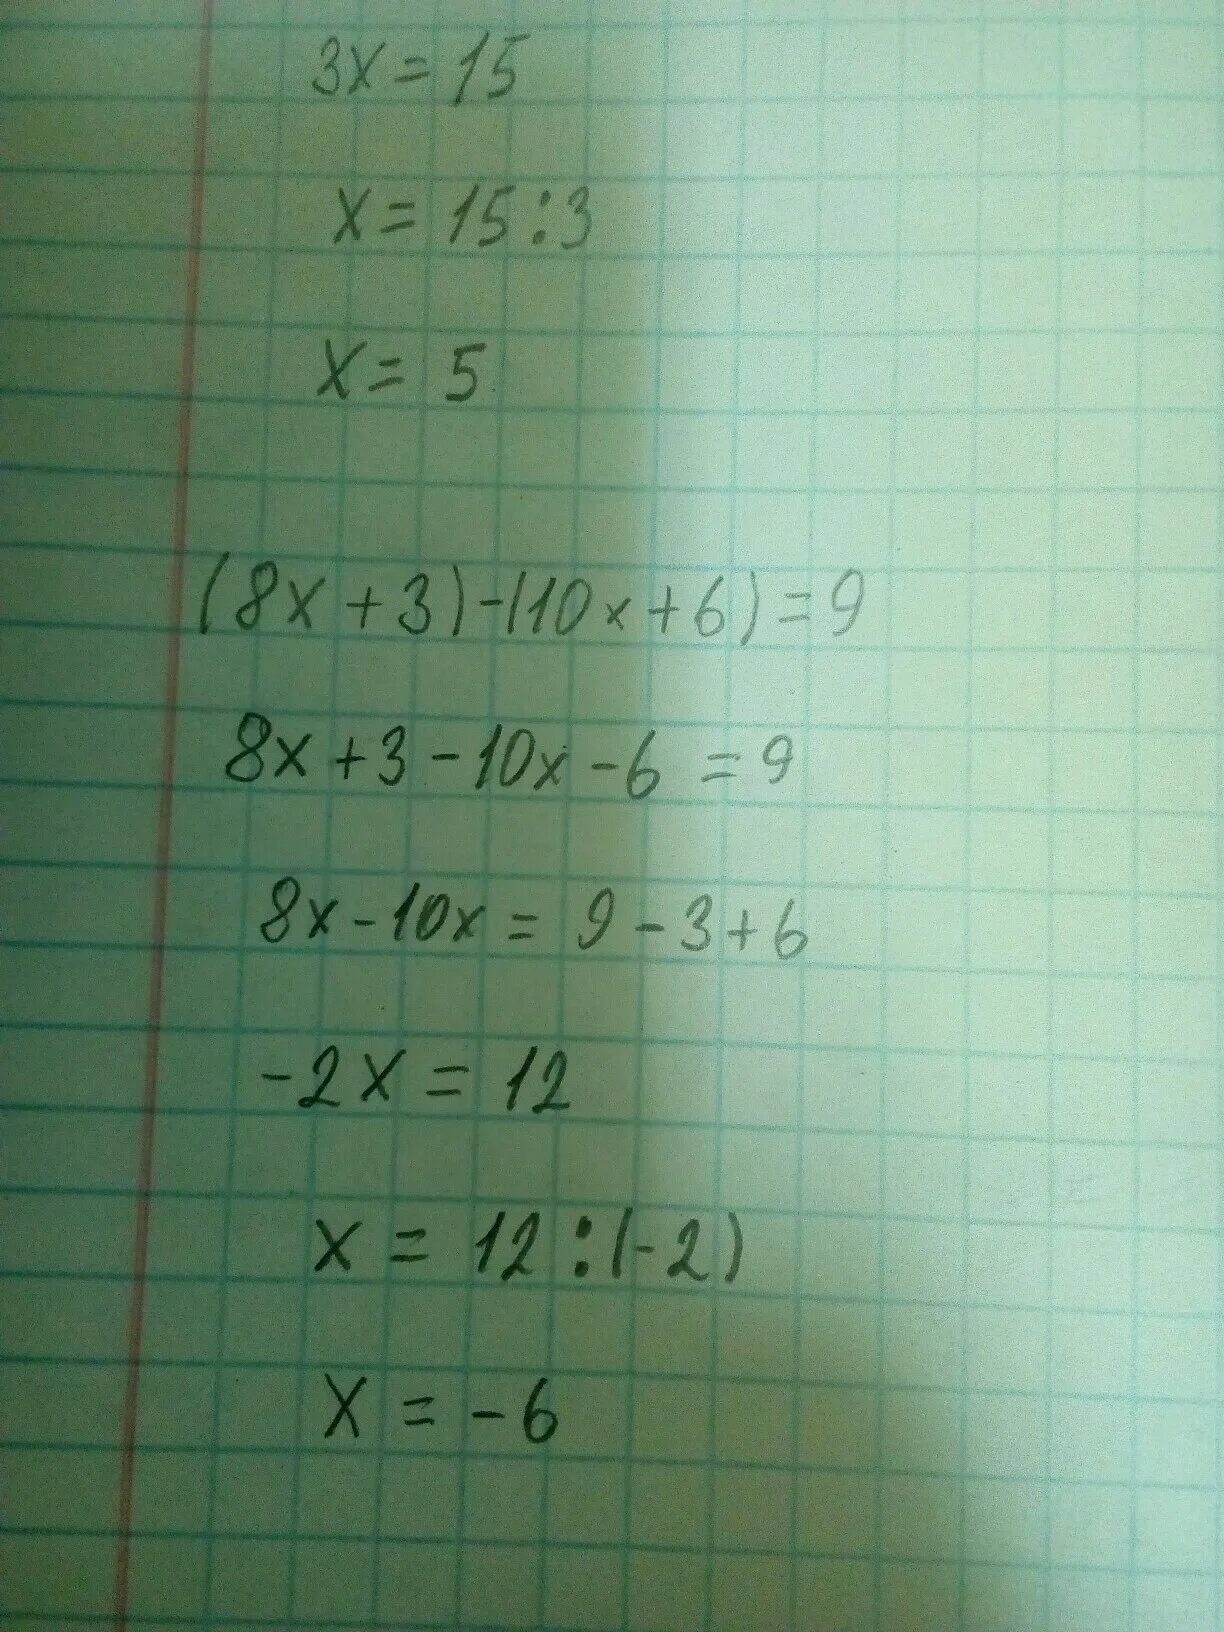 9 06 10 3. (10-X)(10+X). (8x+3)-(10x+6)=9. (2x-10)-(3x-4)=6. 4x-10=x+8 ответ.